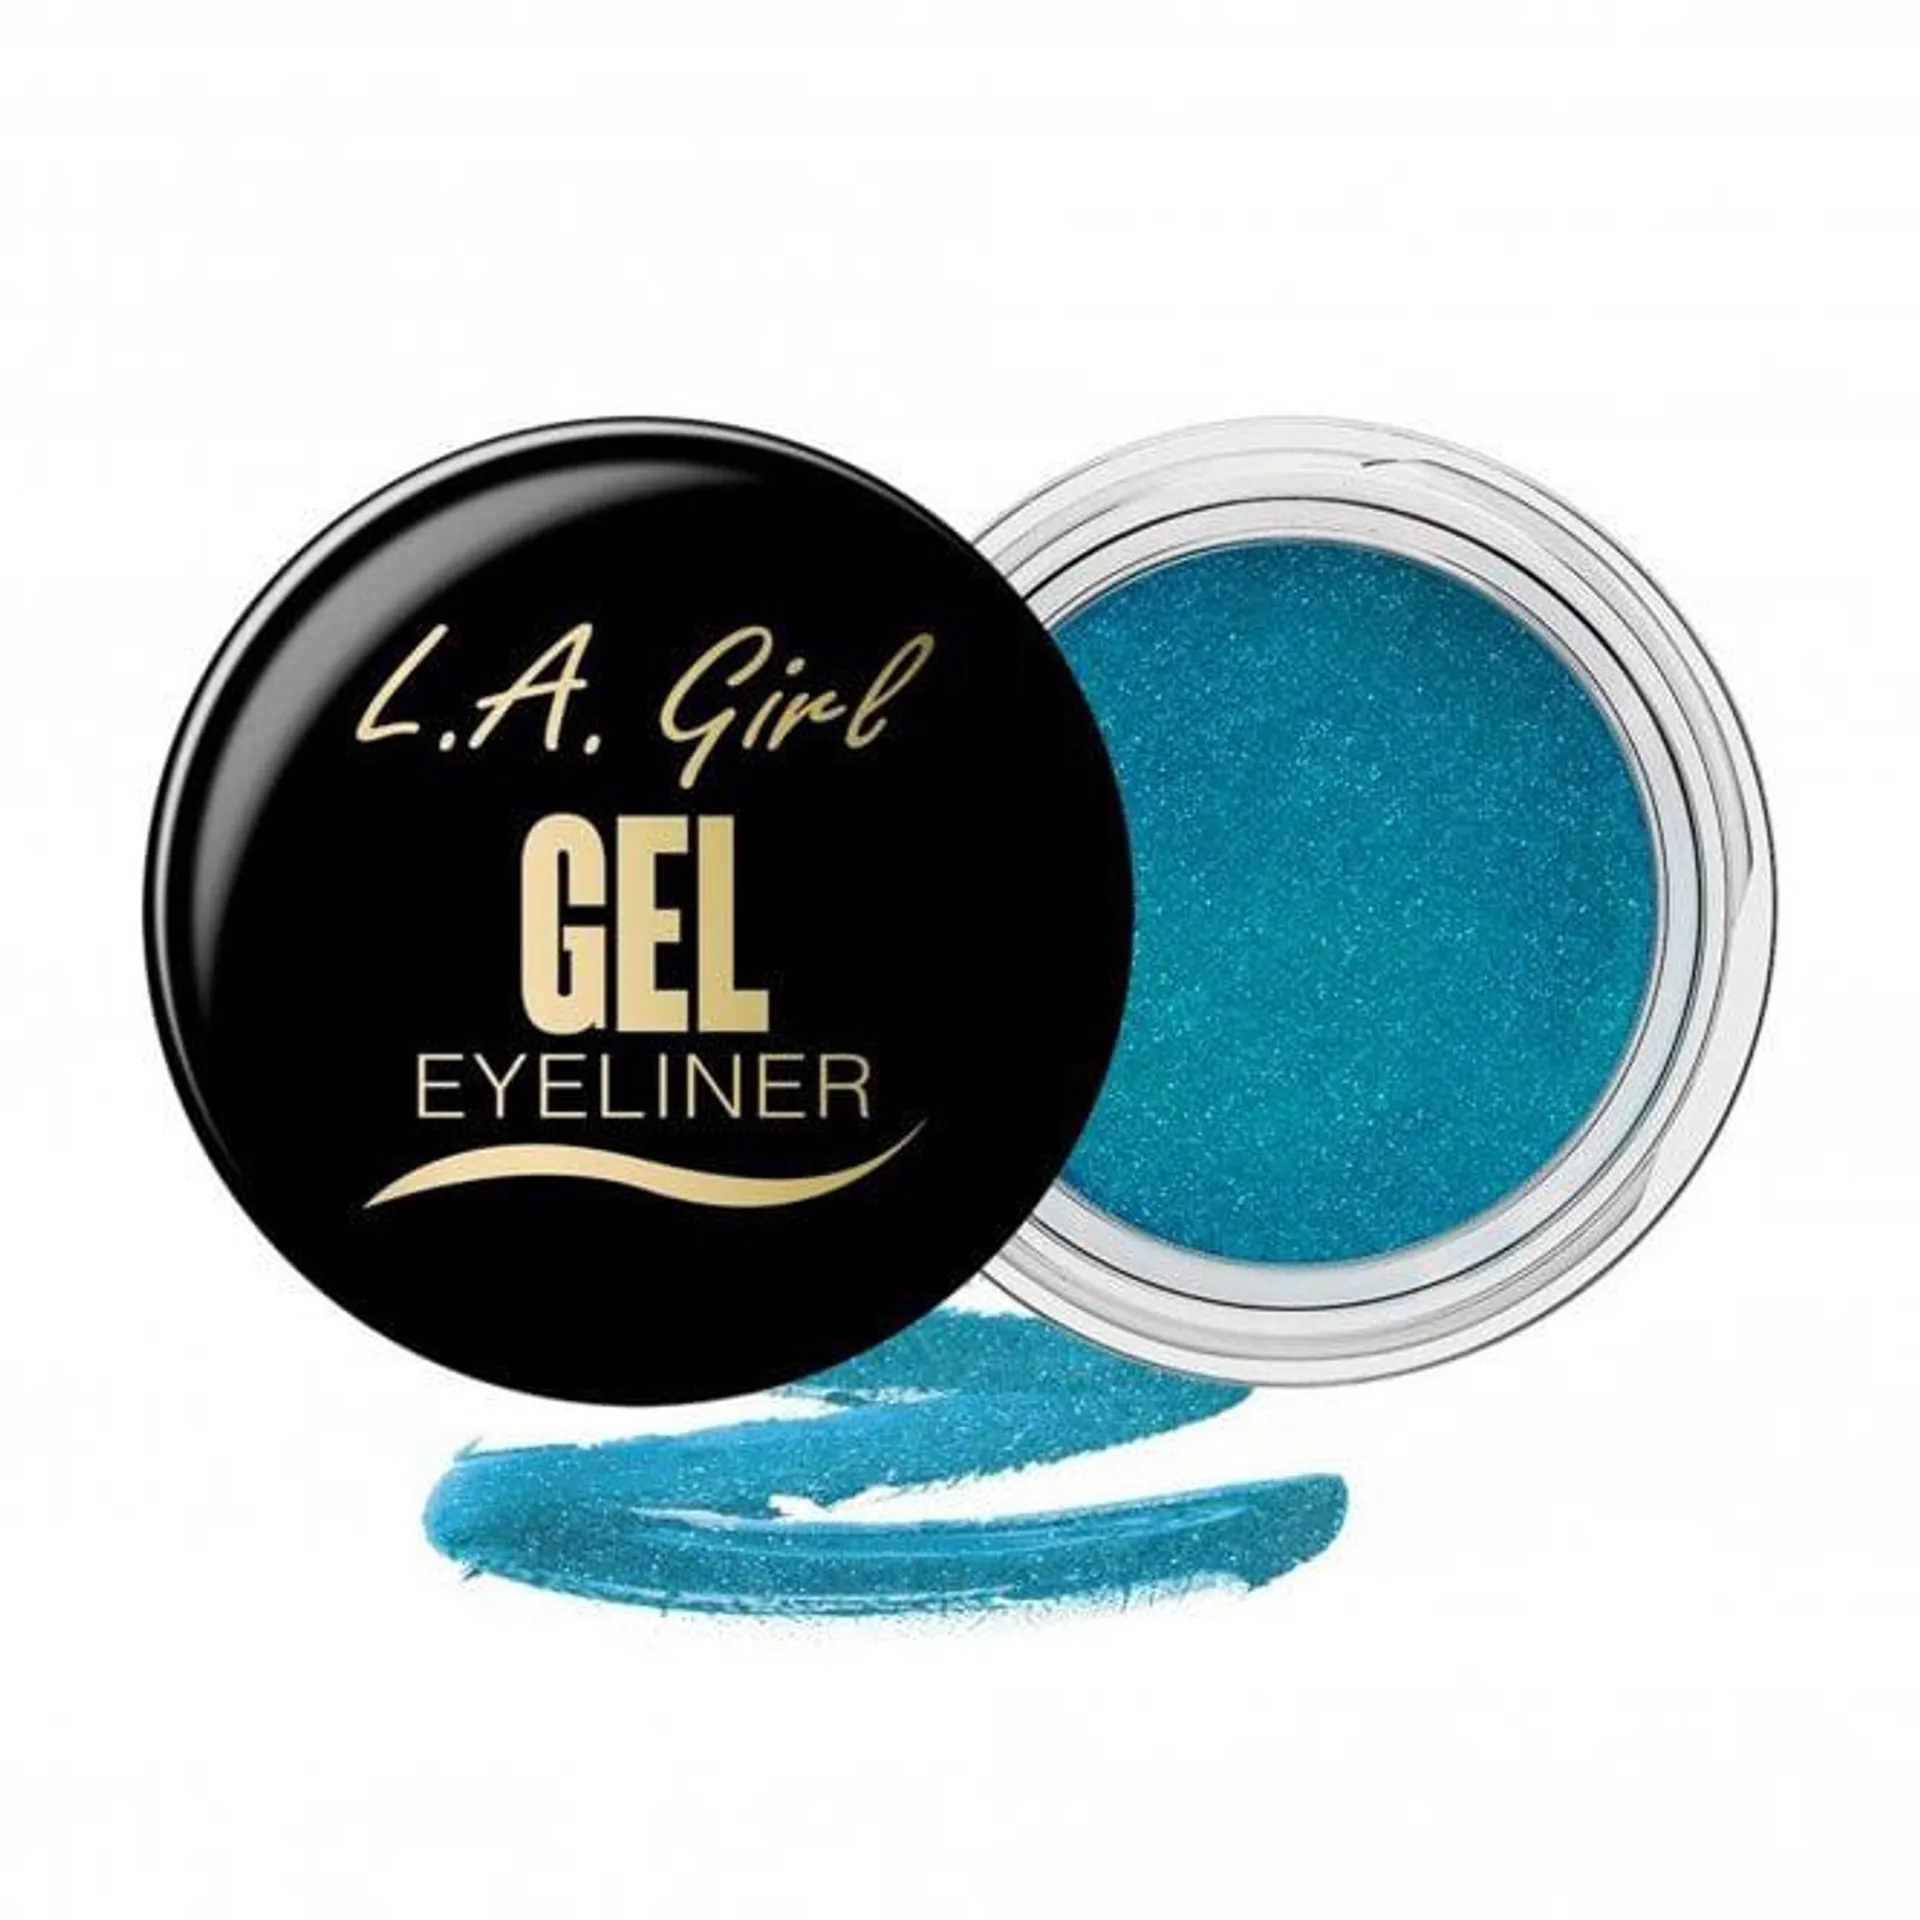 LA Girl Gel Liner - Mermaid Teal Frost